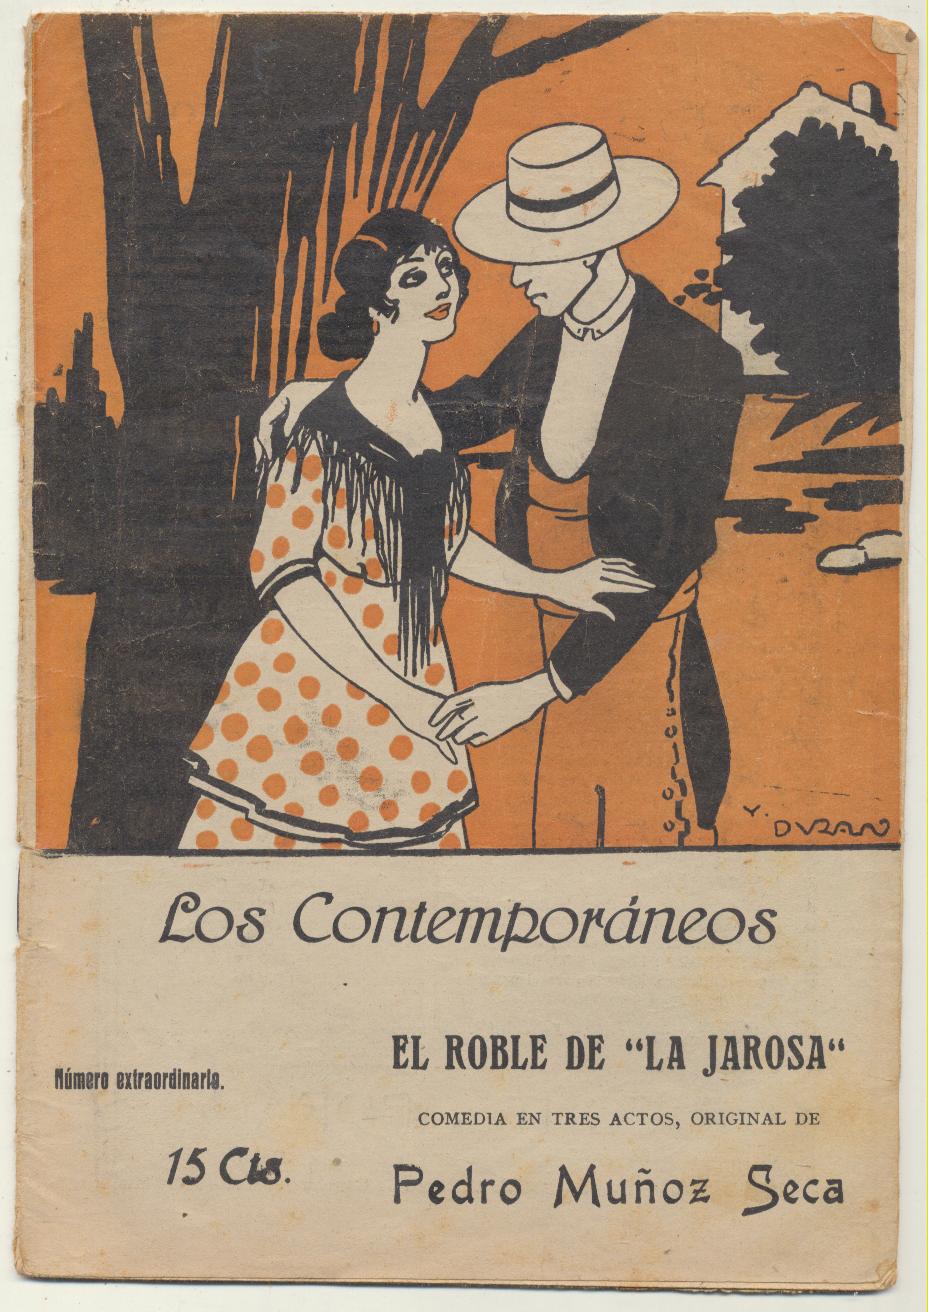 Los Contemporáneos nº 608. El Roble de la Jarosa por Pedro Muñoz Seca. Comedia en tres Actos. Año 1920